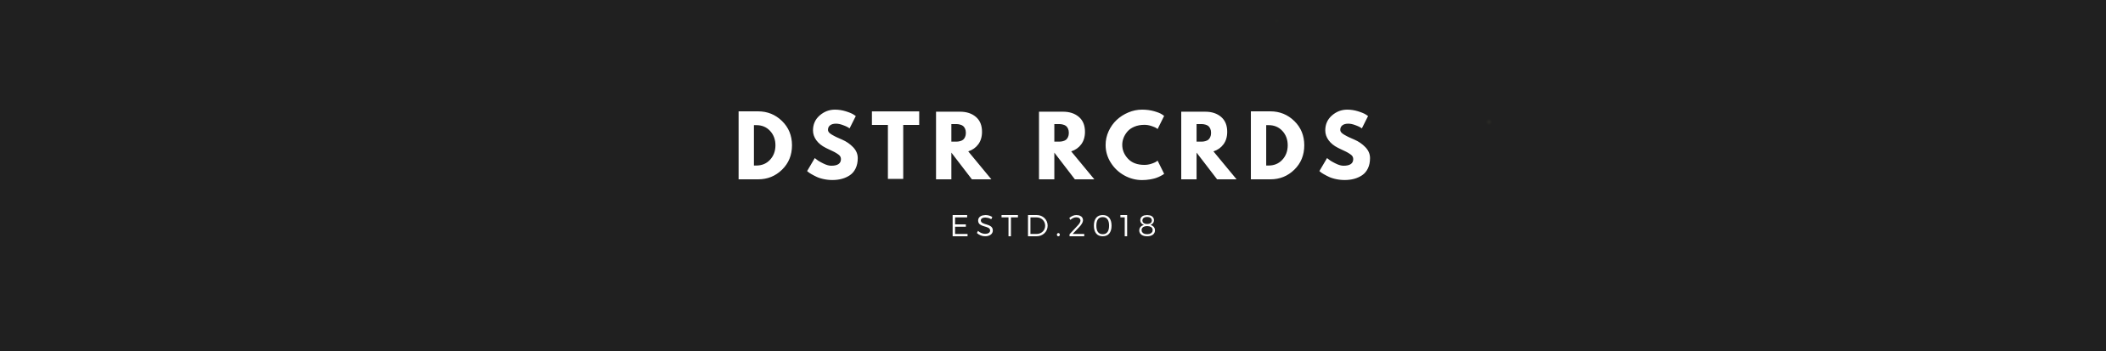 DSTR RCRDS